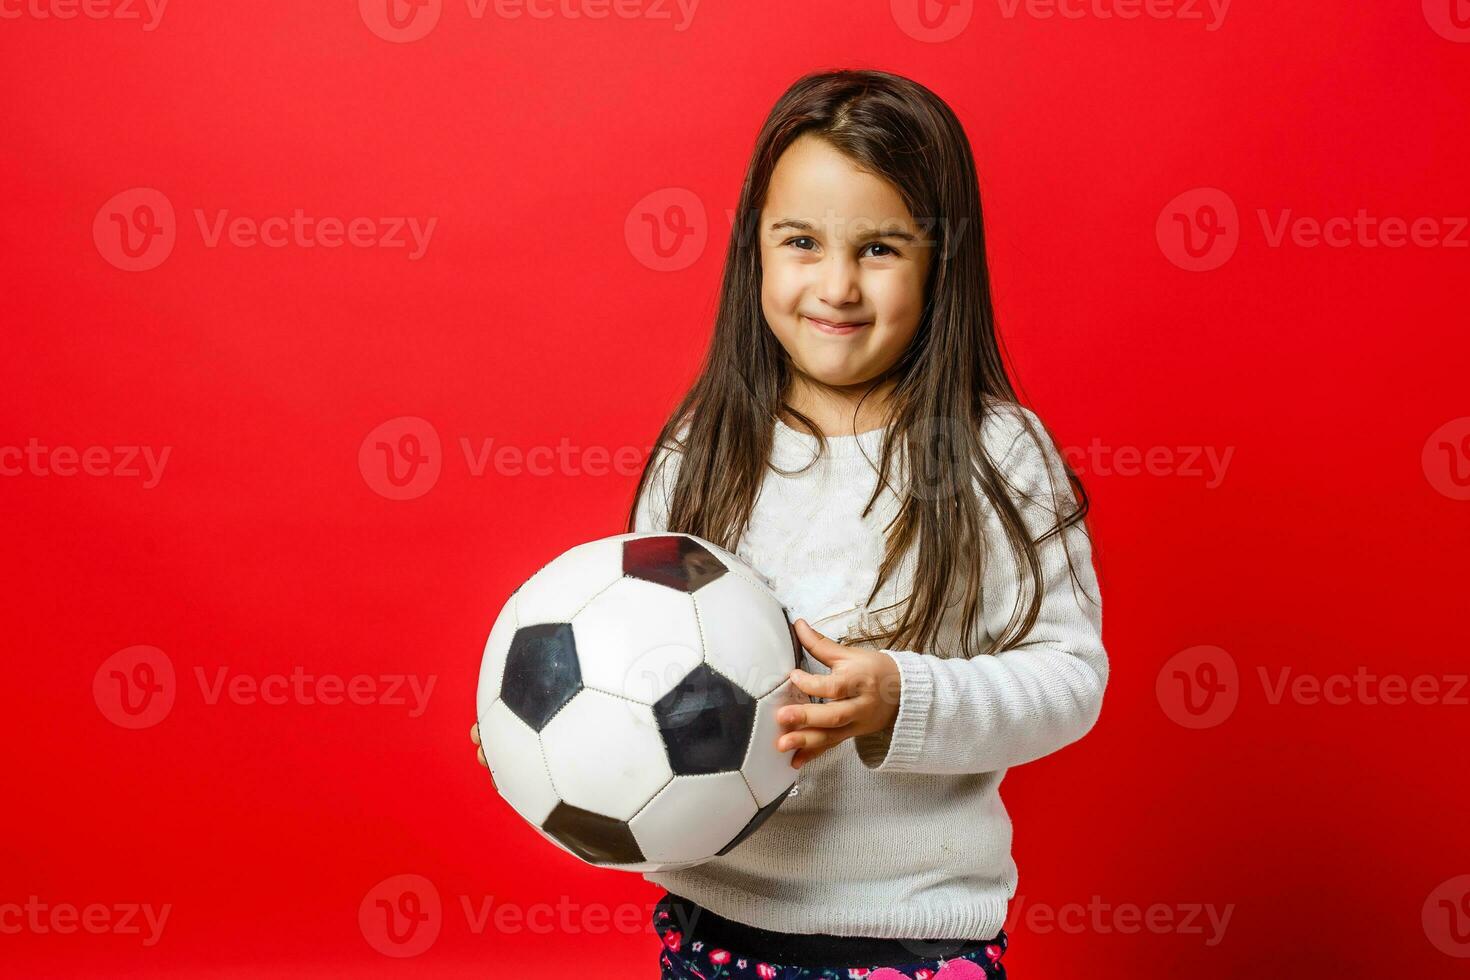 glücklich wenig Mädchen lächelt mit Fußball Ball im Hände foto